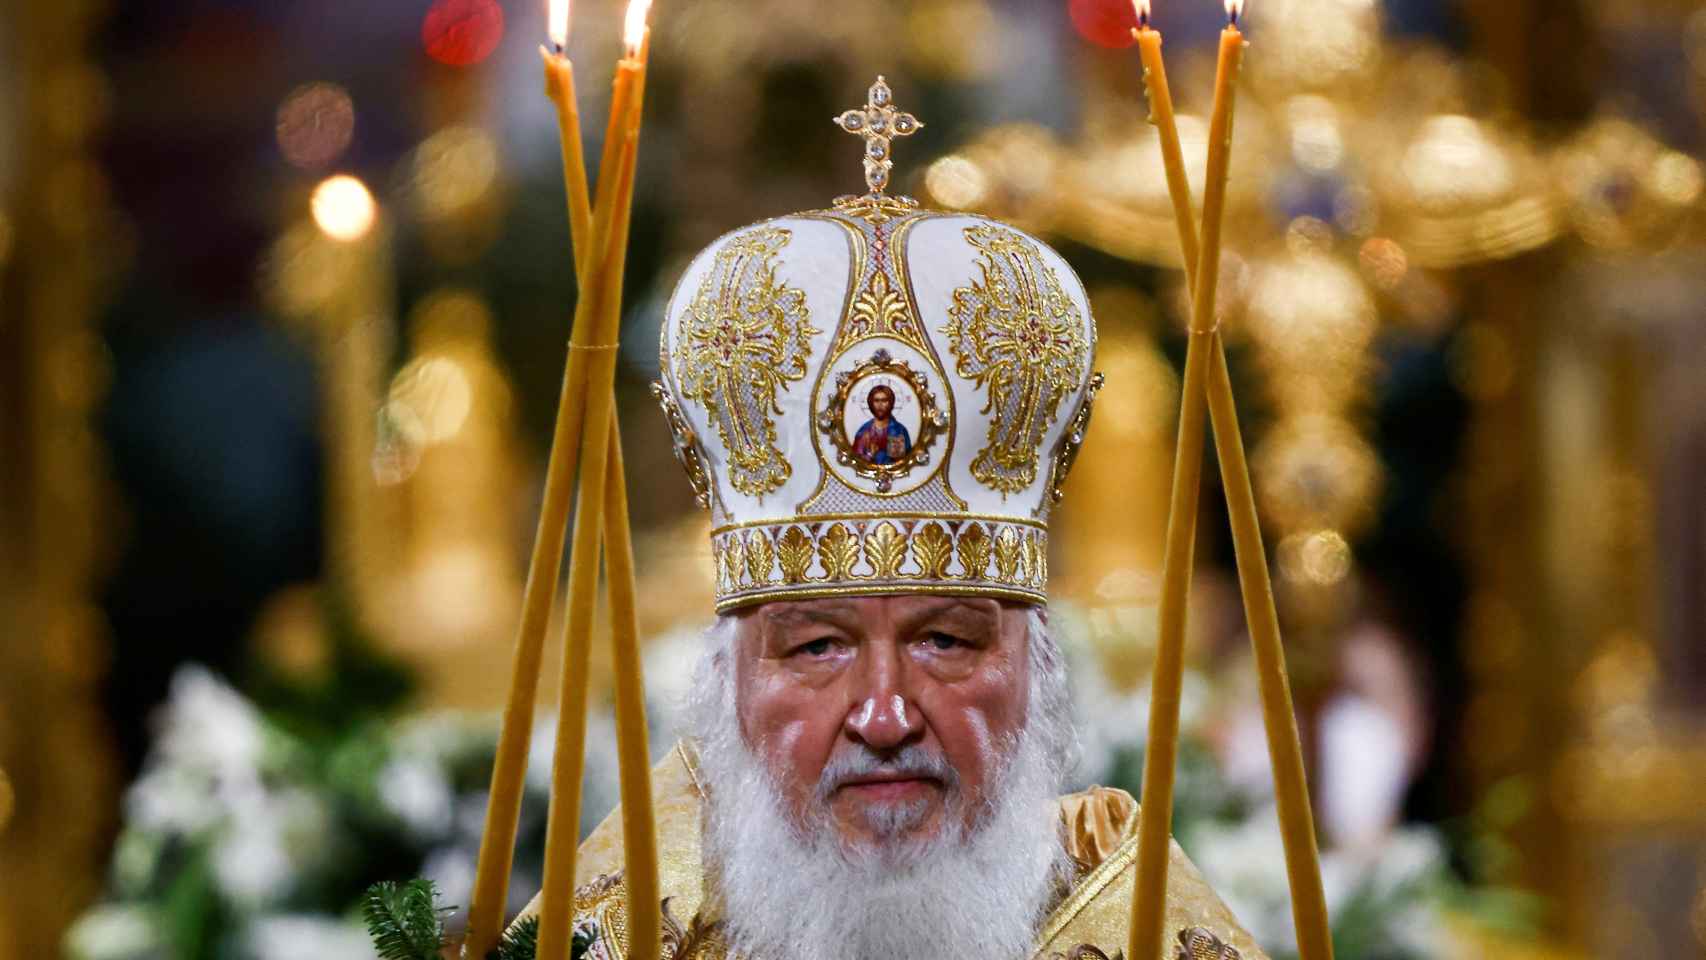 El patriarca Kirill I de Rusia, durante una ceremonia religiosa en Moscú